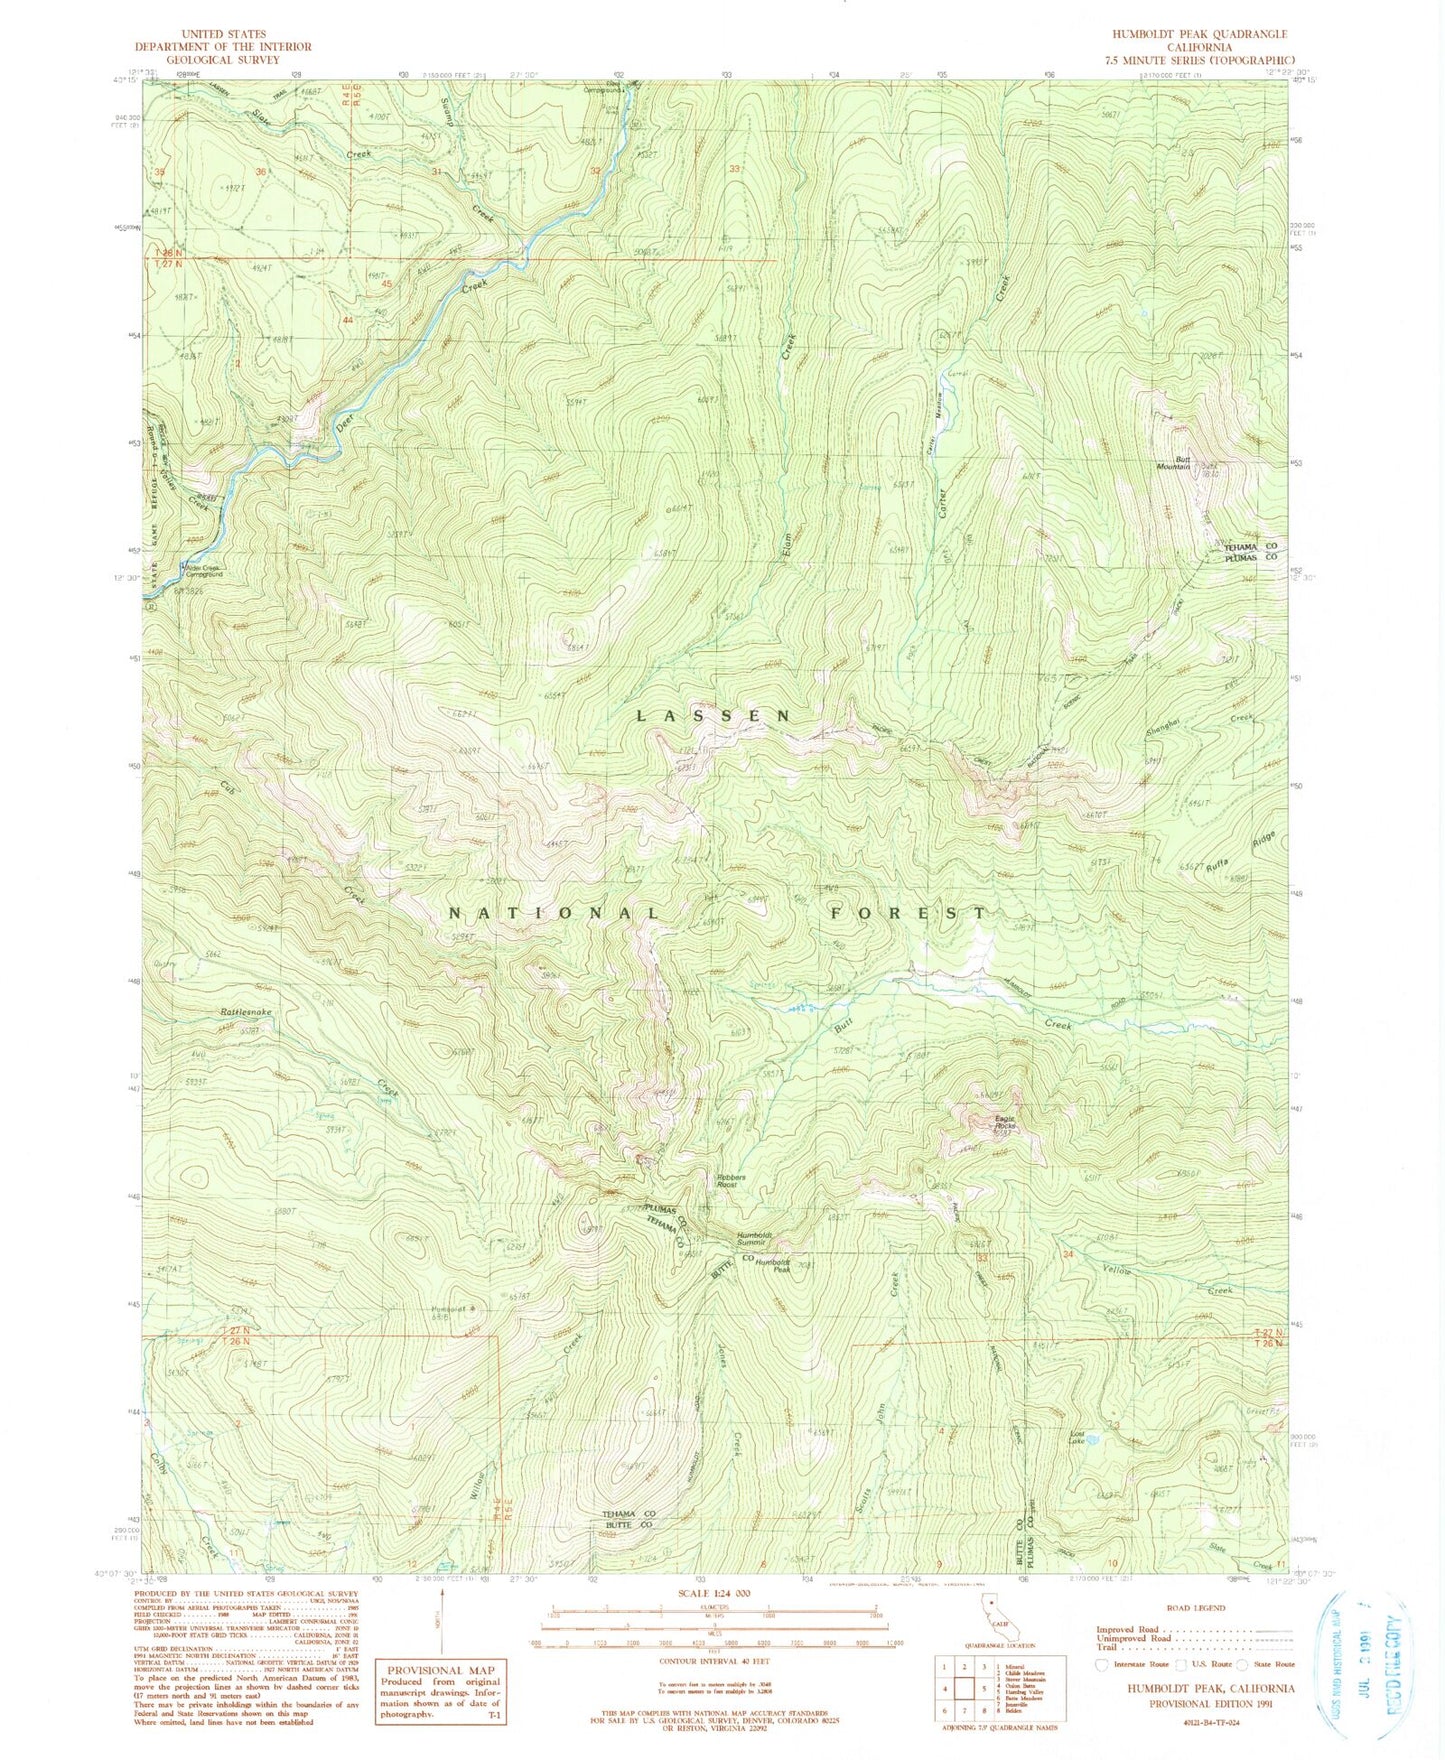 Classic USGS Humboldt Peak California 7.5'x7.5' Topo Map Image